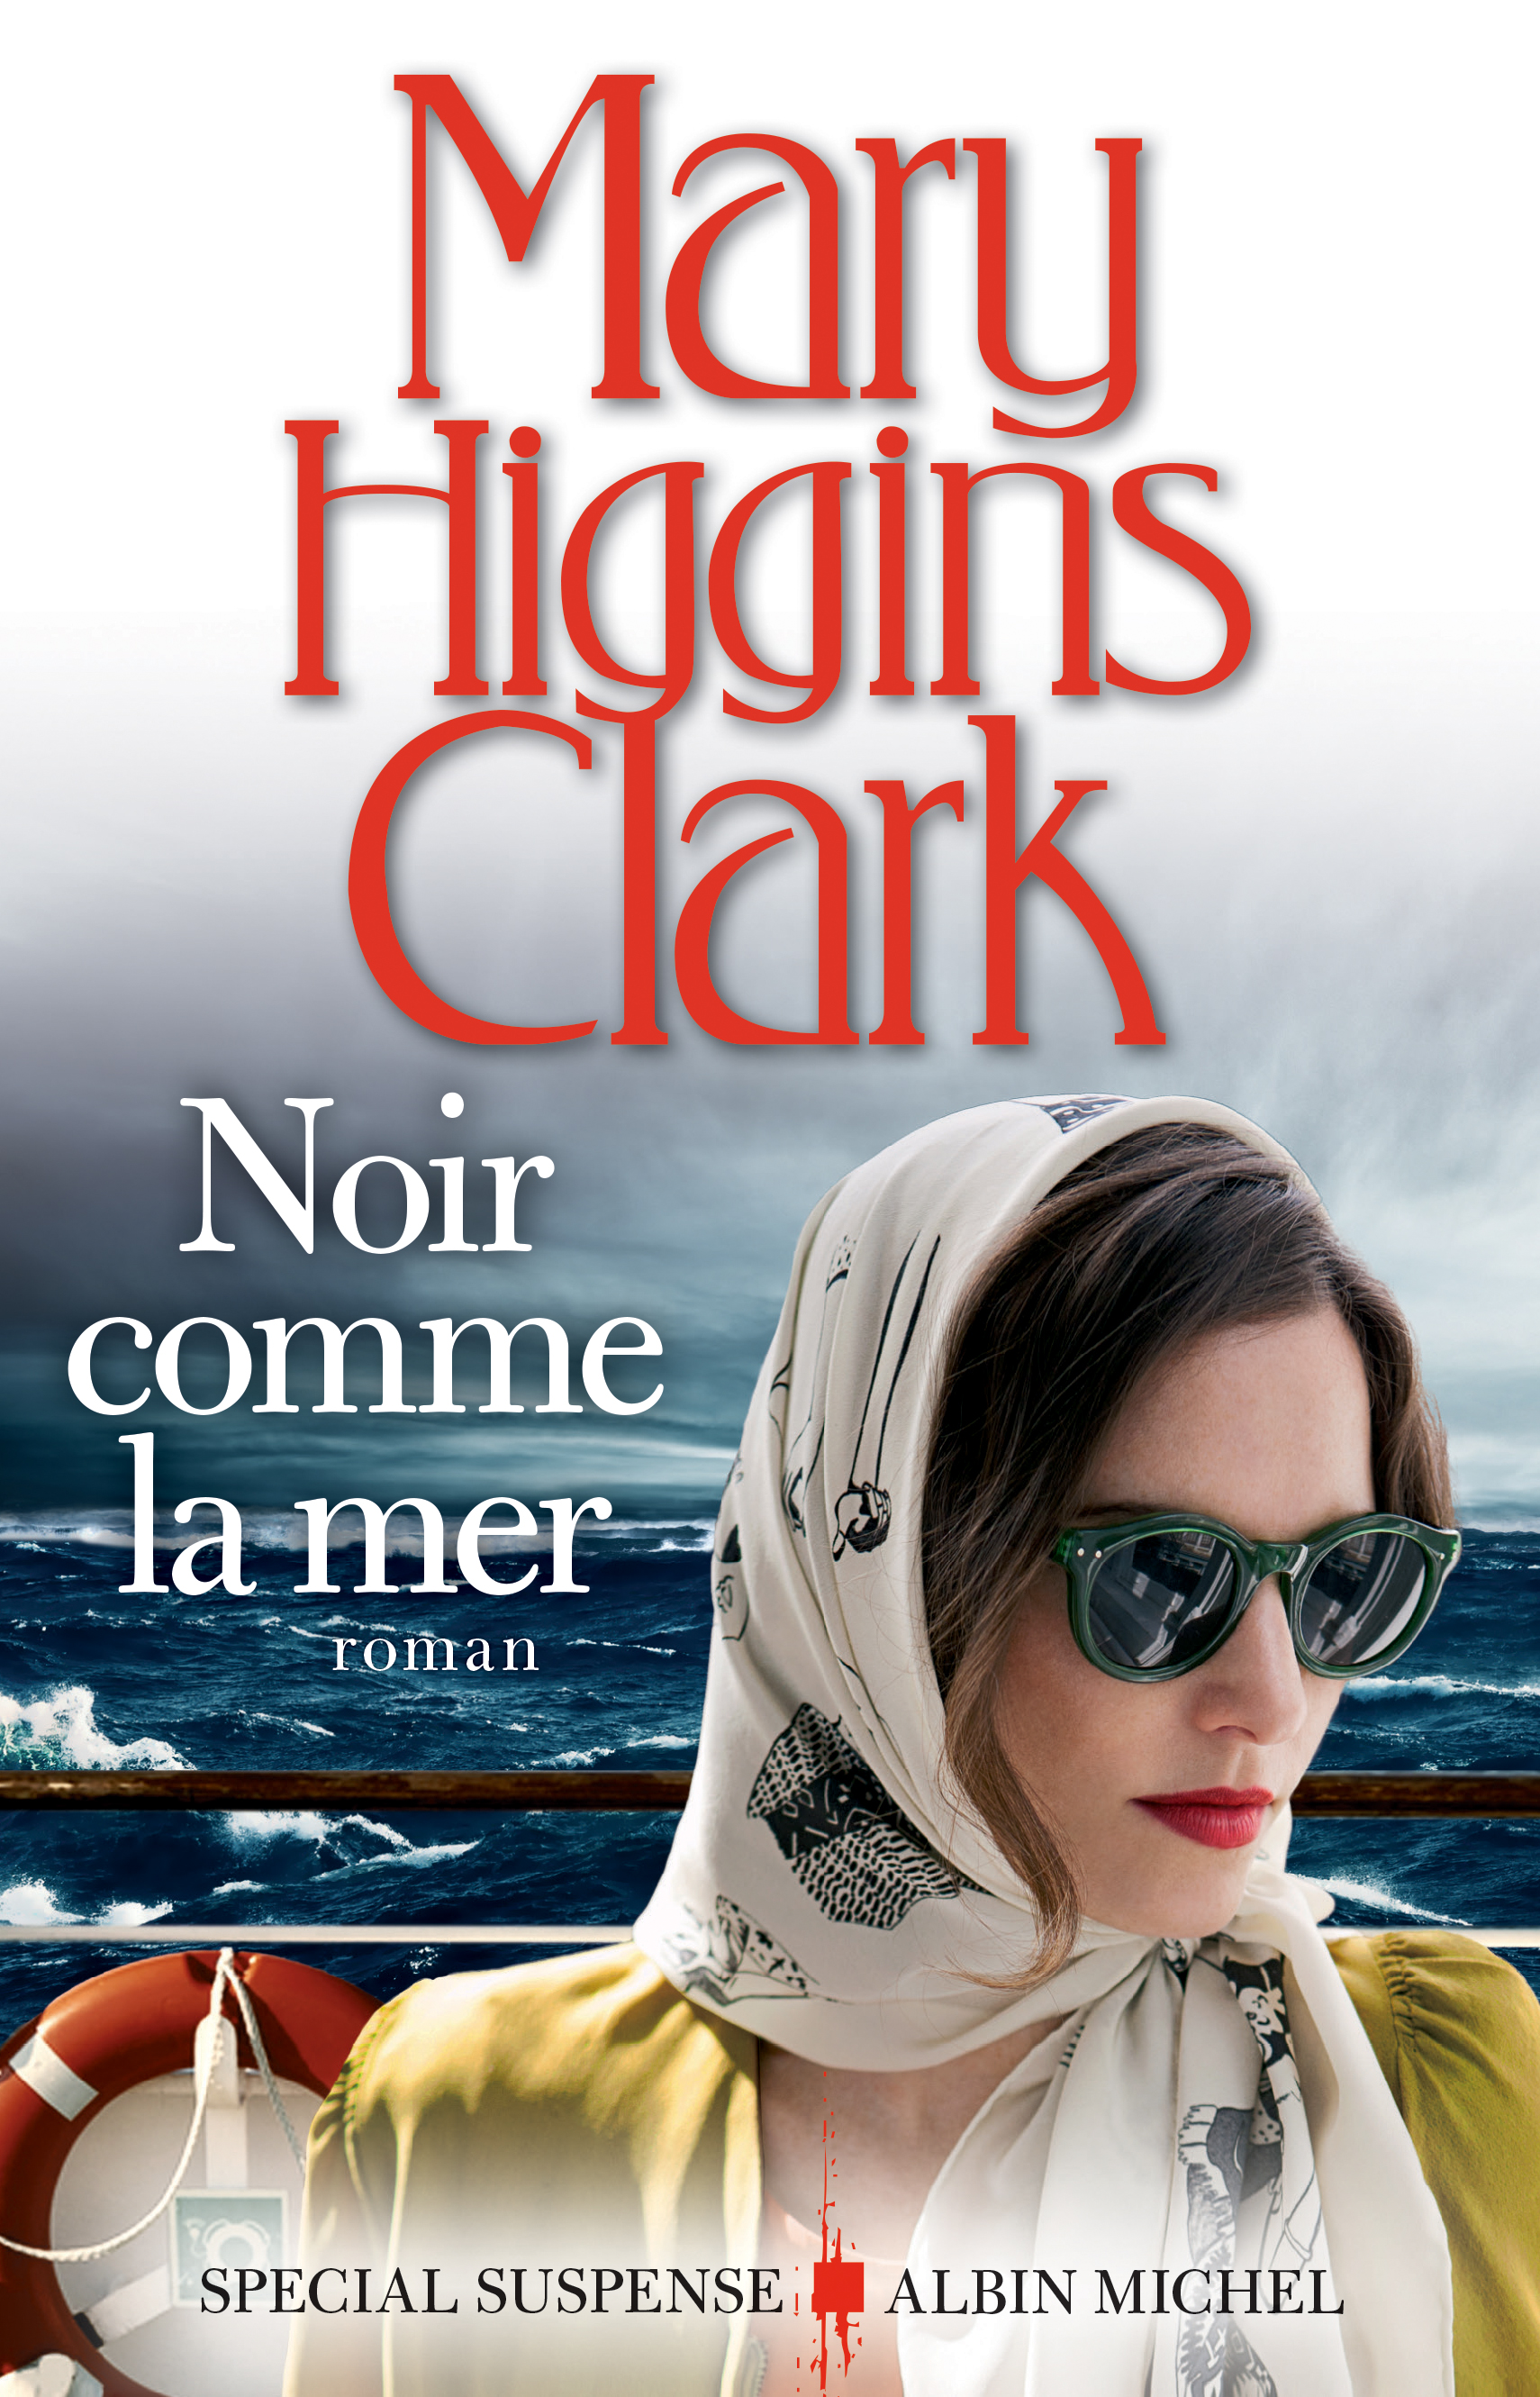 Le nouveau roman de Mary Higgins Clark le 10 mai en librairie | www.cnewsmatin.fr